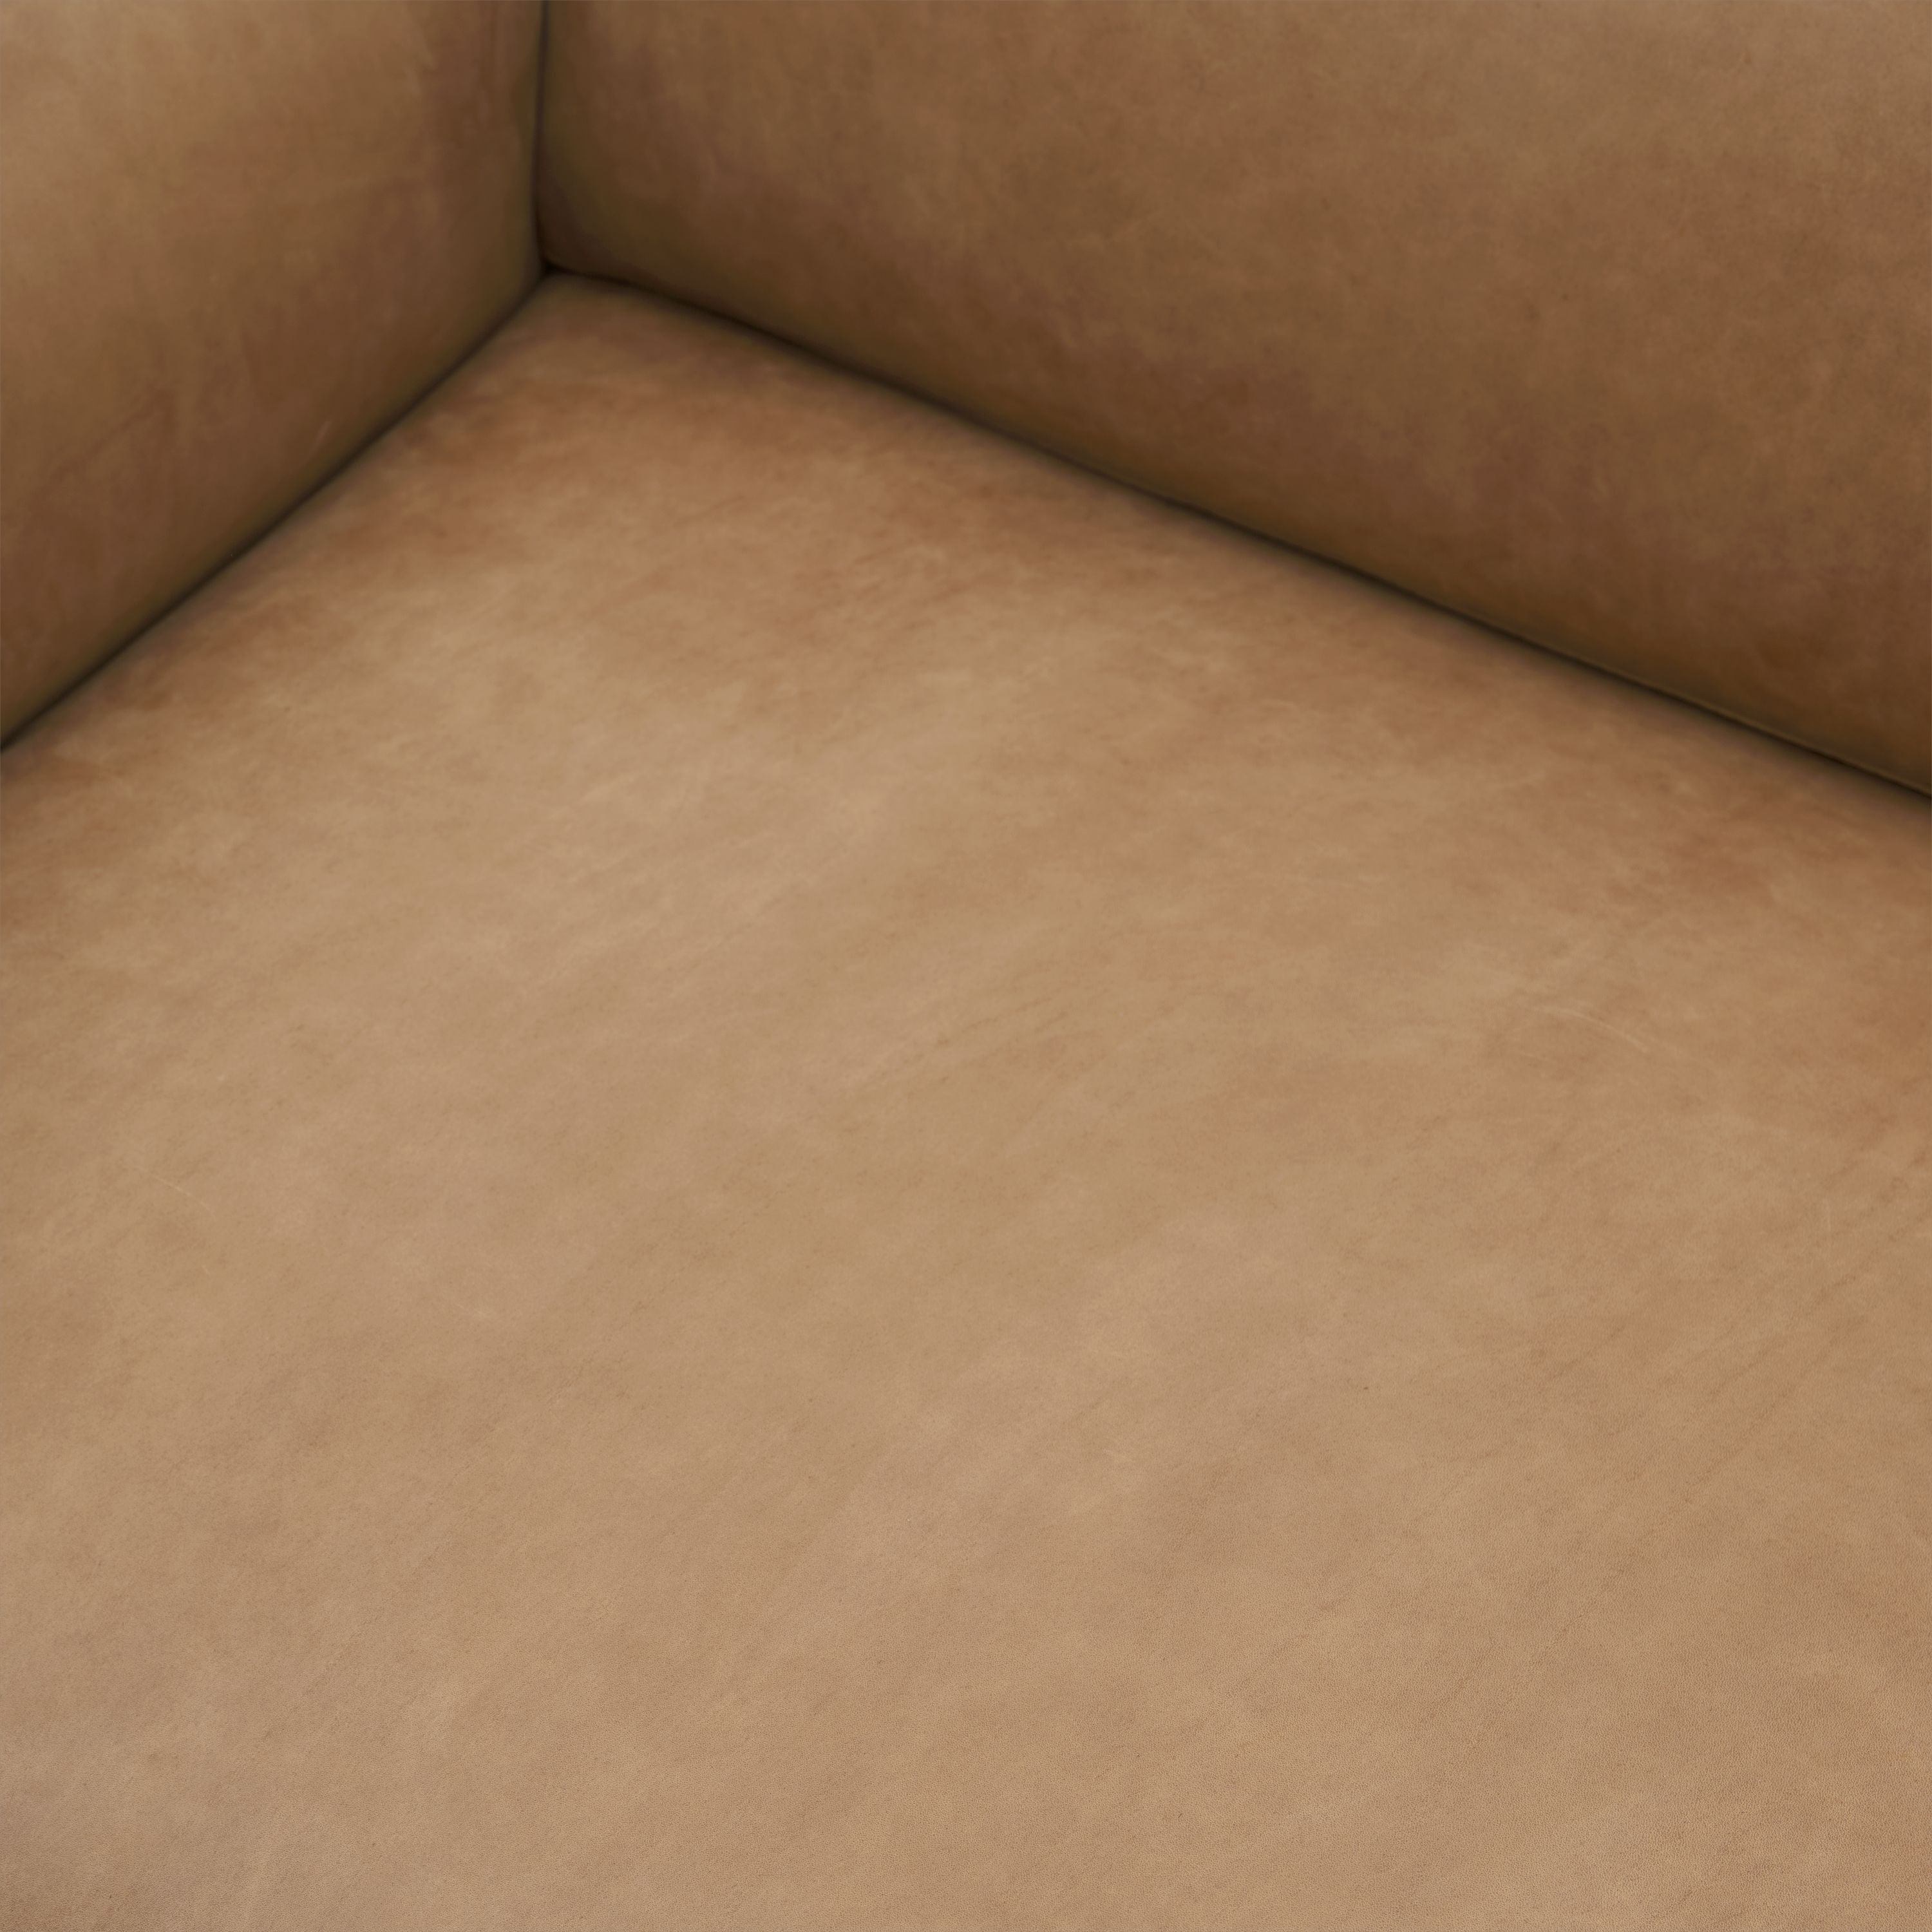 Muuto contorno divano 3 posti in pelle di grazia, cammello/alluminio